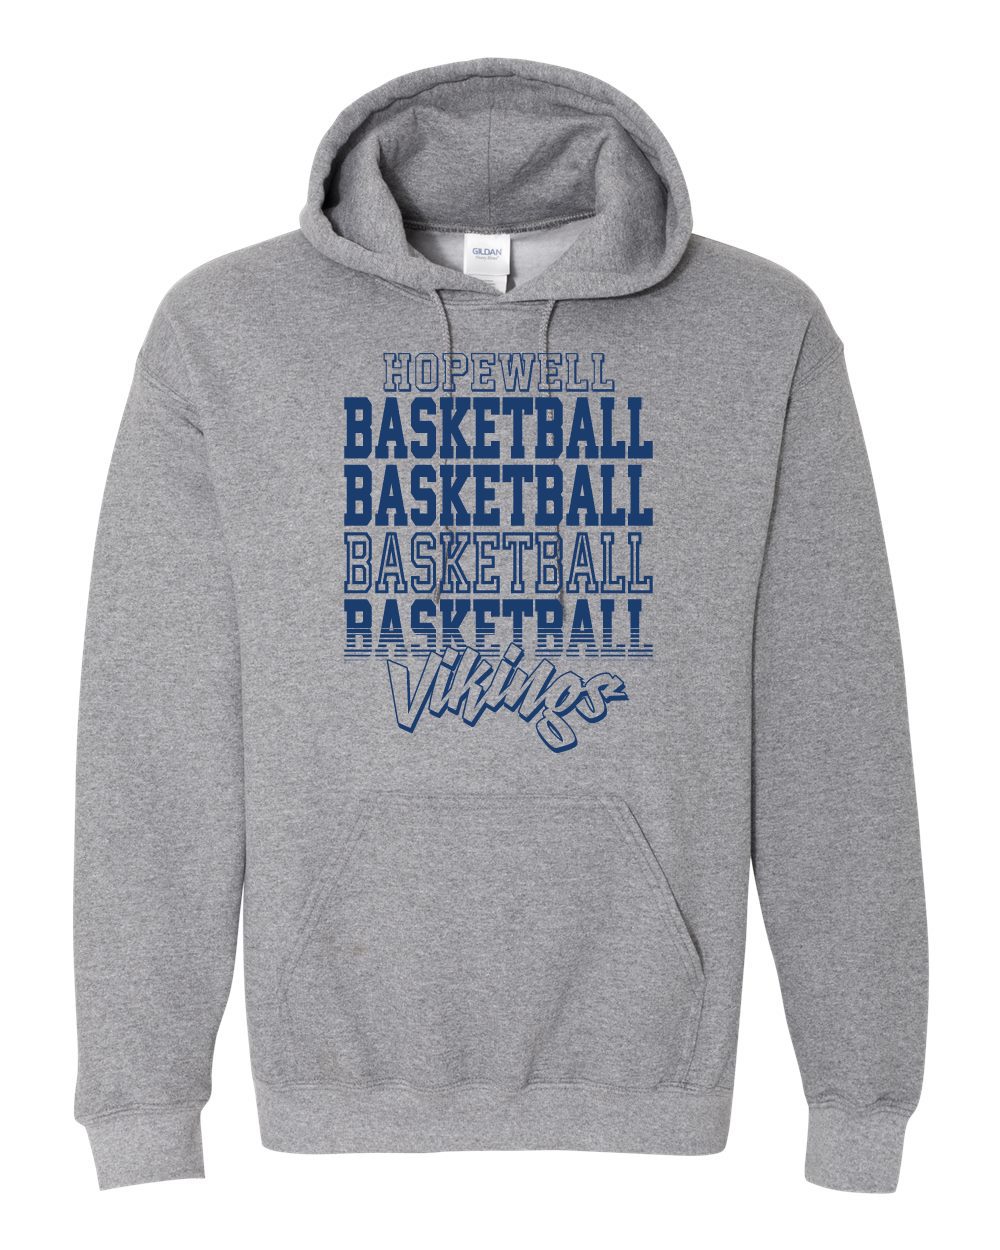 Hopewell Sweatshirt Grey (Basketball Life)